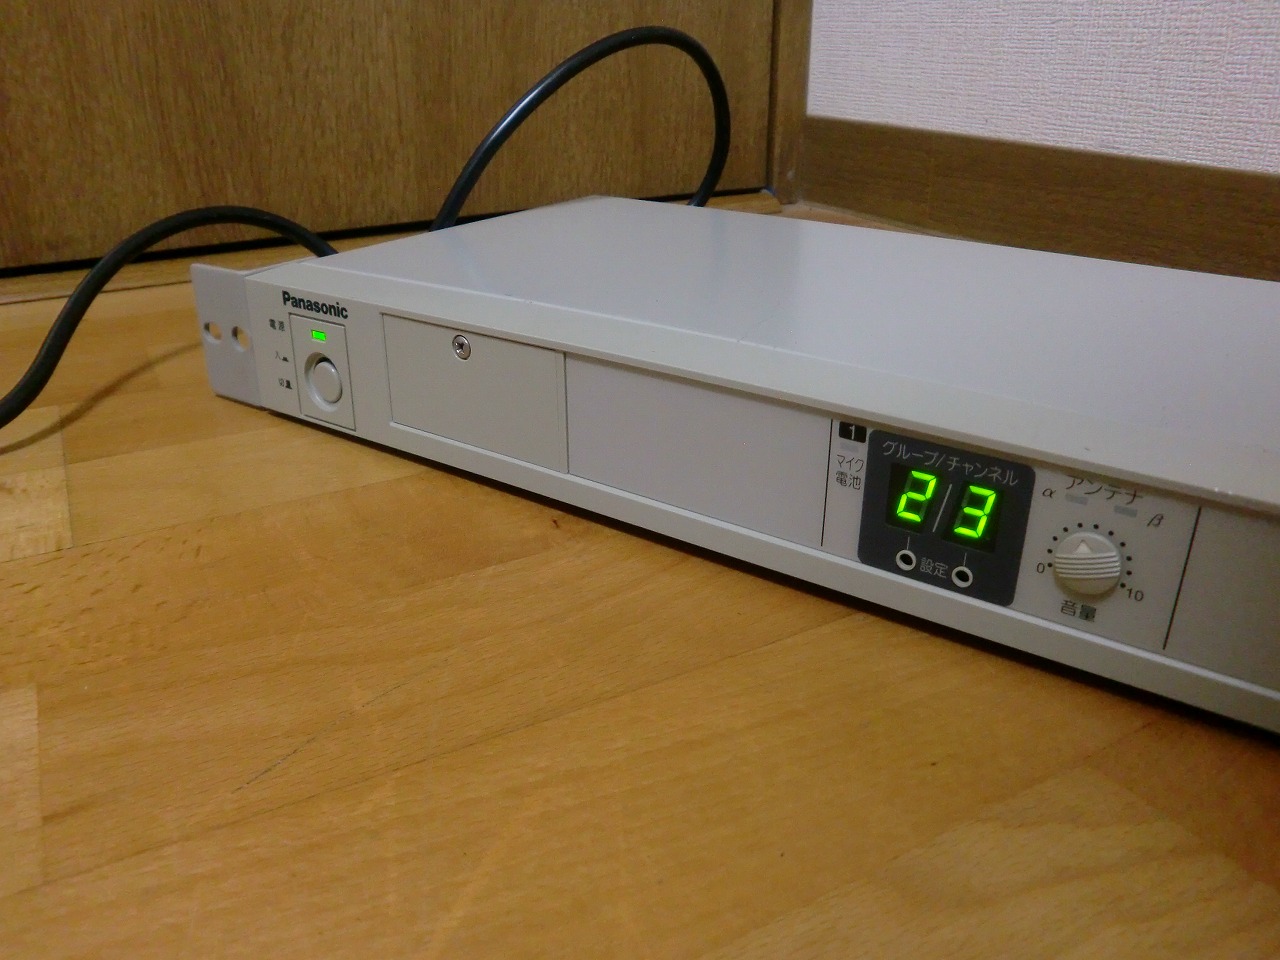 ワイヤレス受信機 Panasonic WX-4020B パナソニック 800 MHz帯 PLL ノイズリダクション方式 ダイバシティ